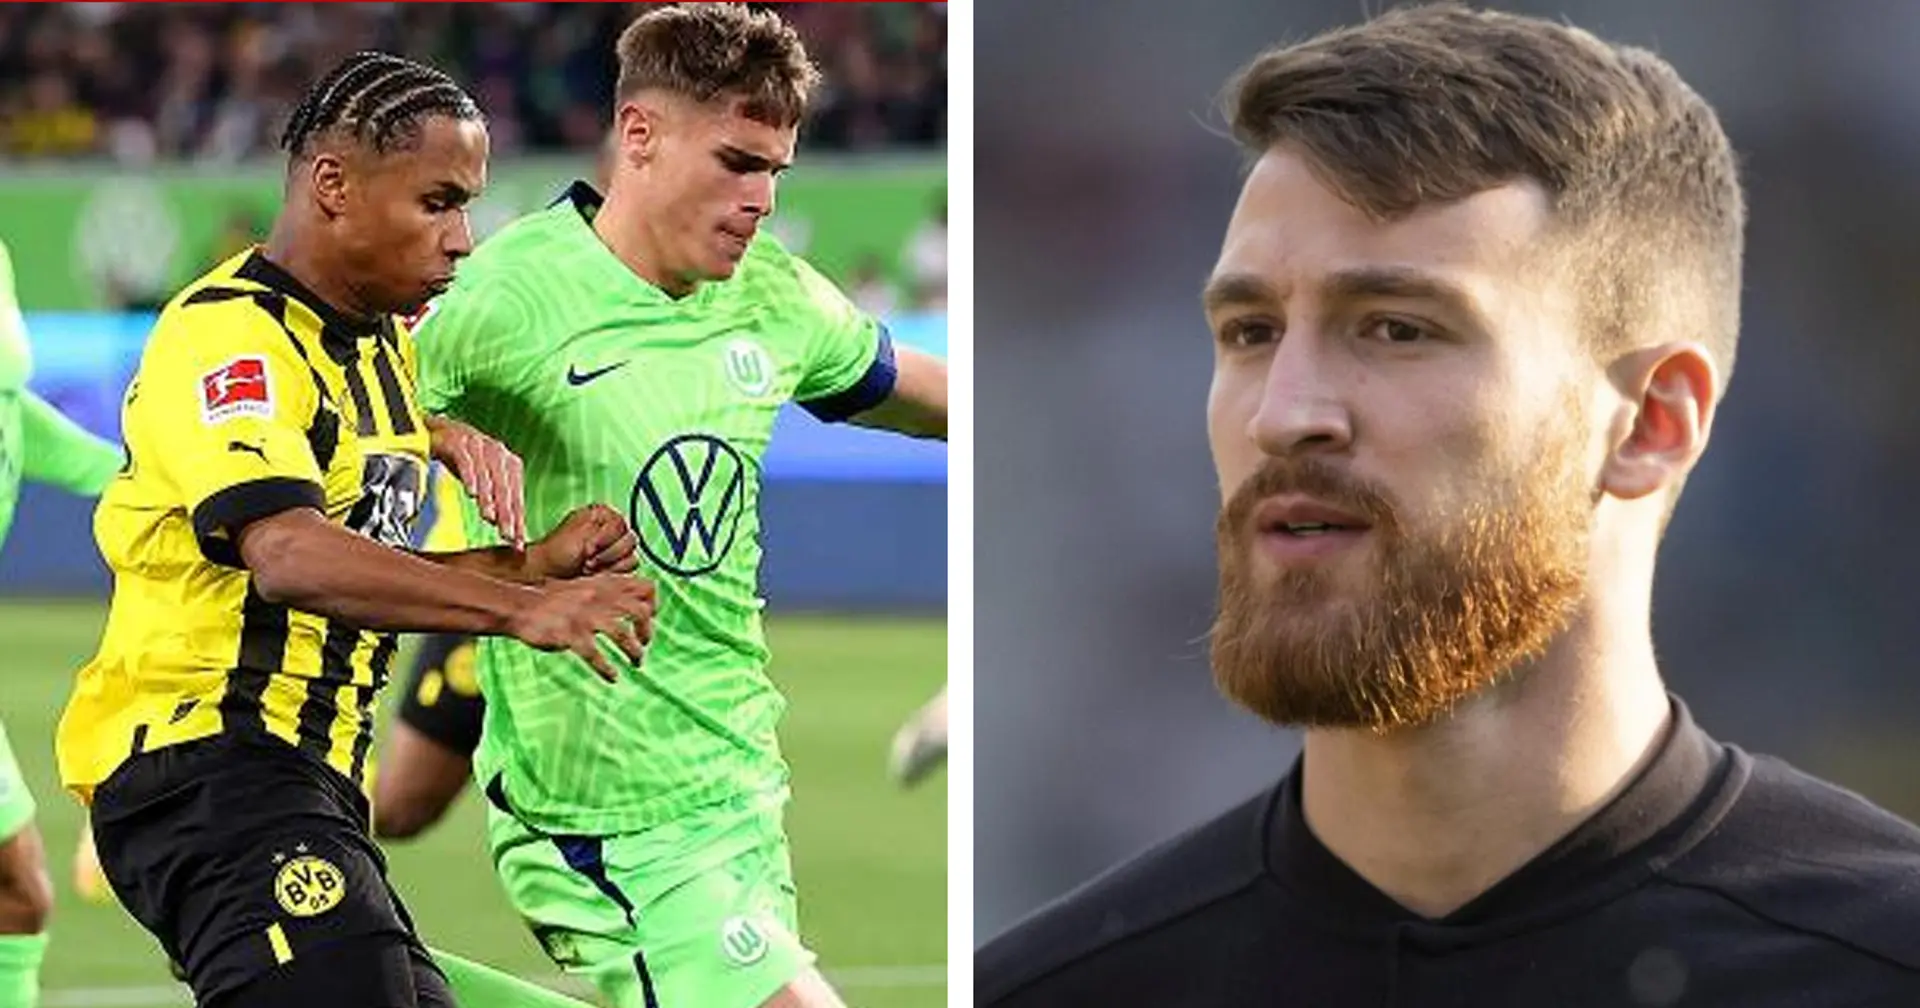 Özcan ist enttäuscht über die Niederlage vs. Wolfsburg: "Es ist dumm gelaufen"